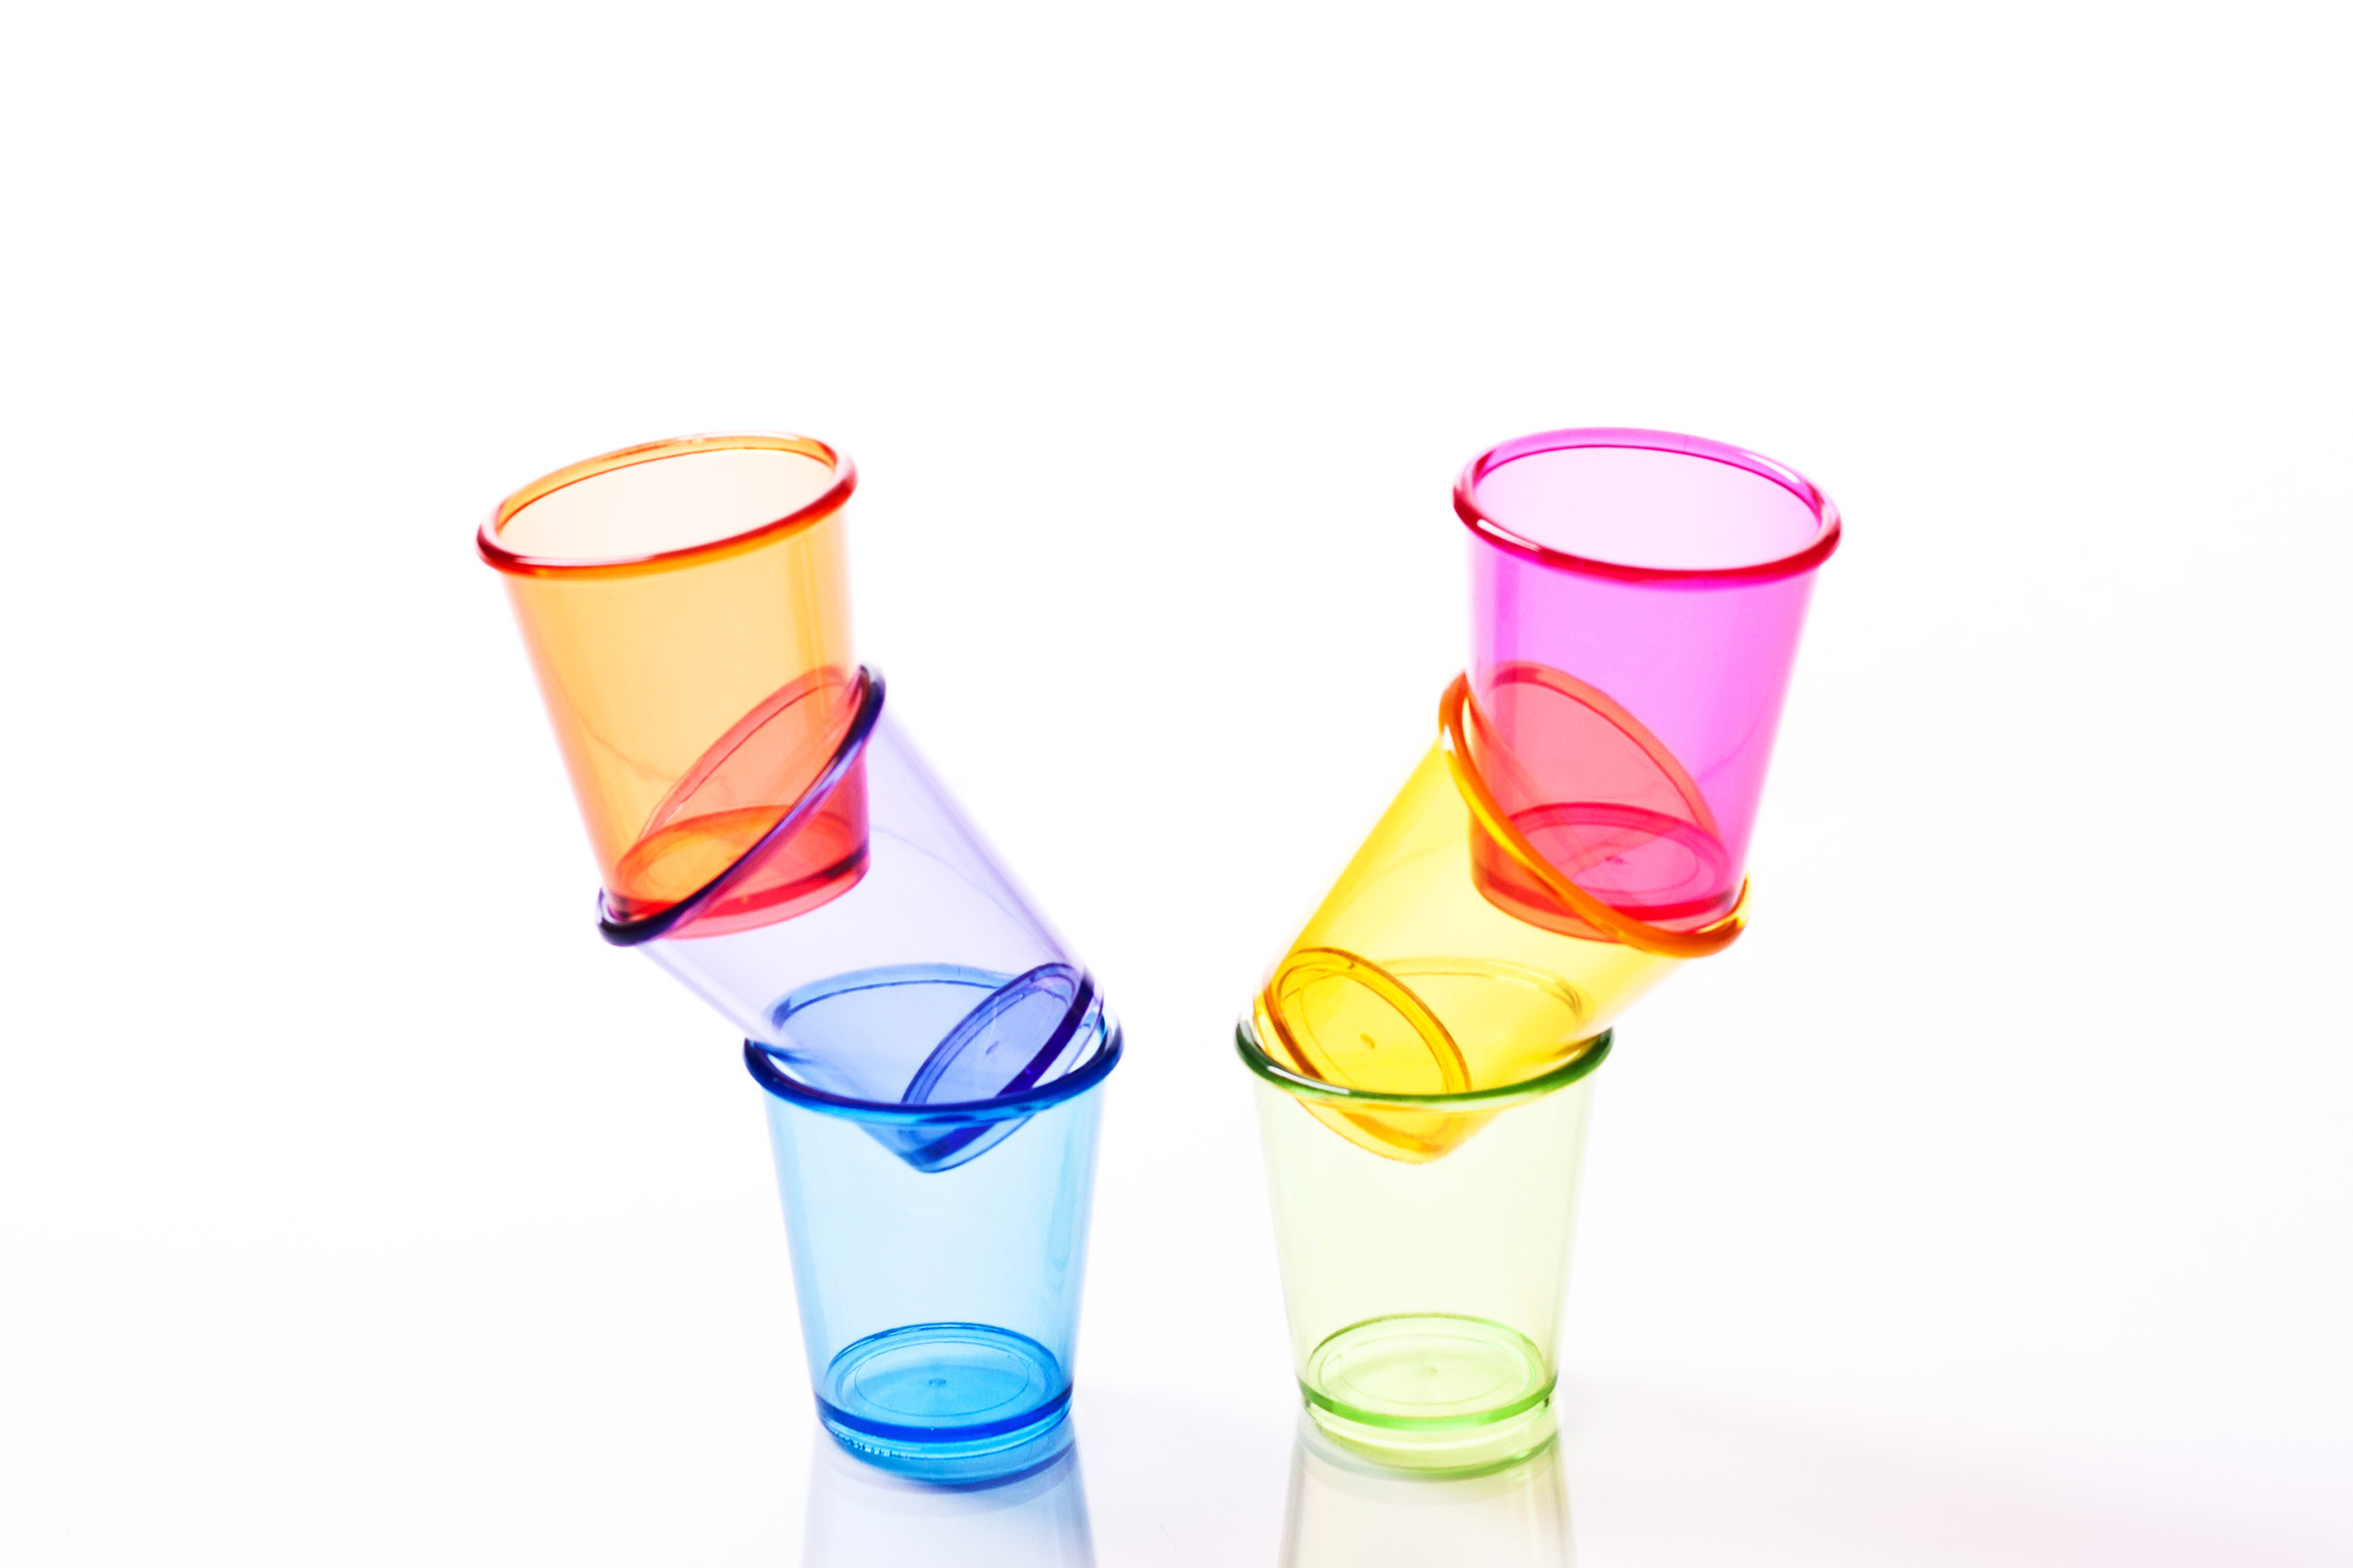 Free photo: Shot glasses and drinking glasses. - Liquid, Vodka, Small ...